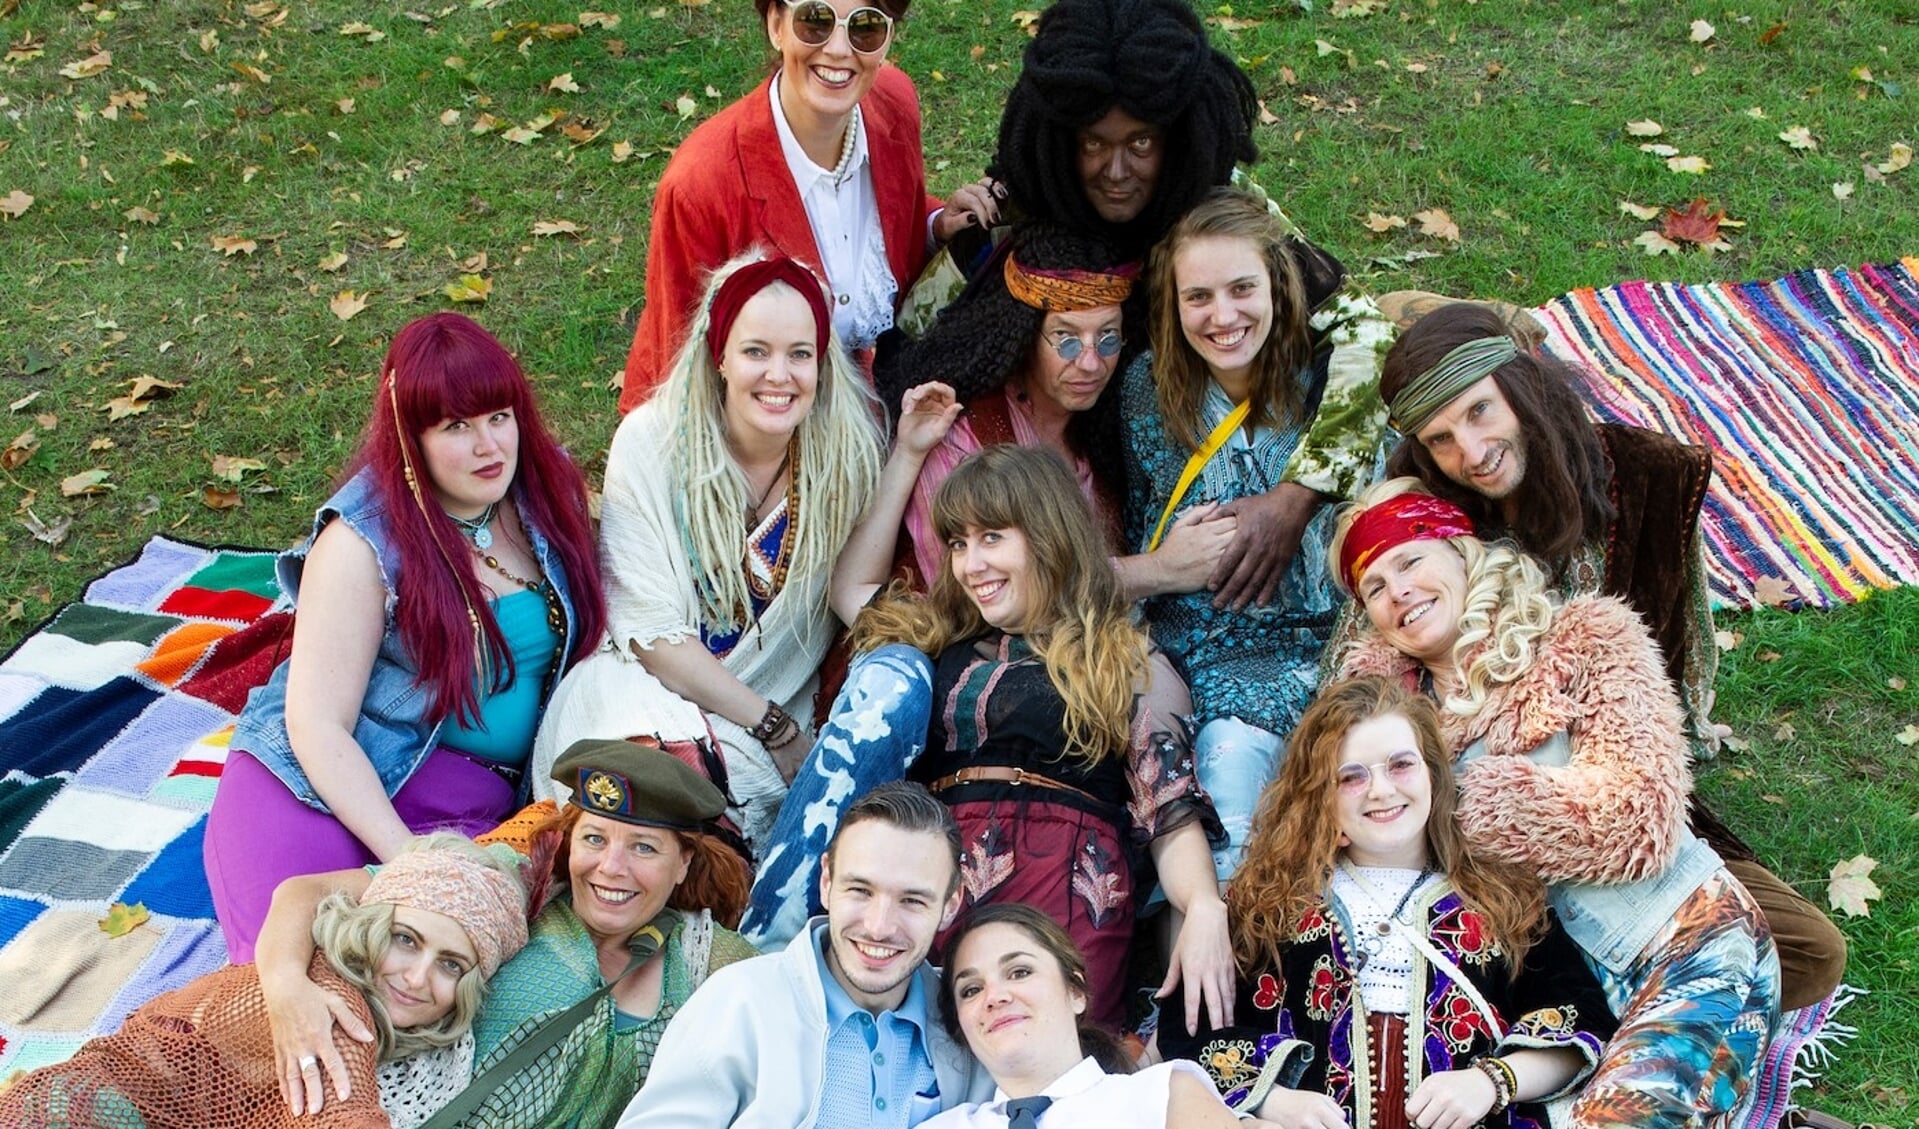 De cast van HAIR neemt de bezoekers mee terug in de tijd, naar de hippiecultuur van de jaren 60. Foto: Sanne Wevers